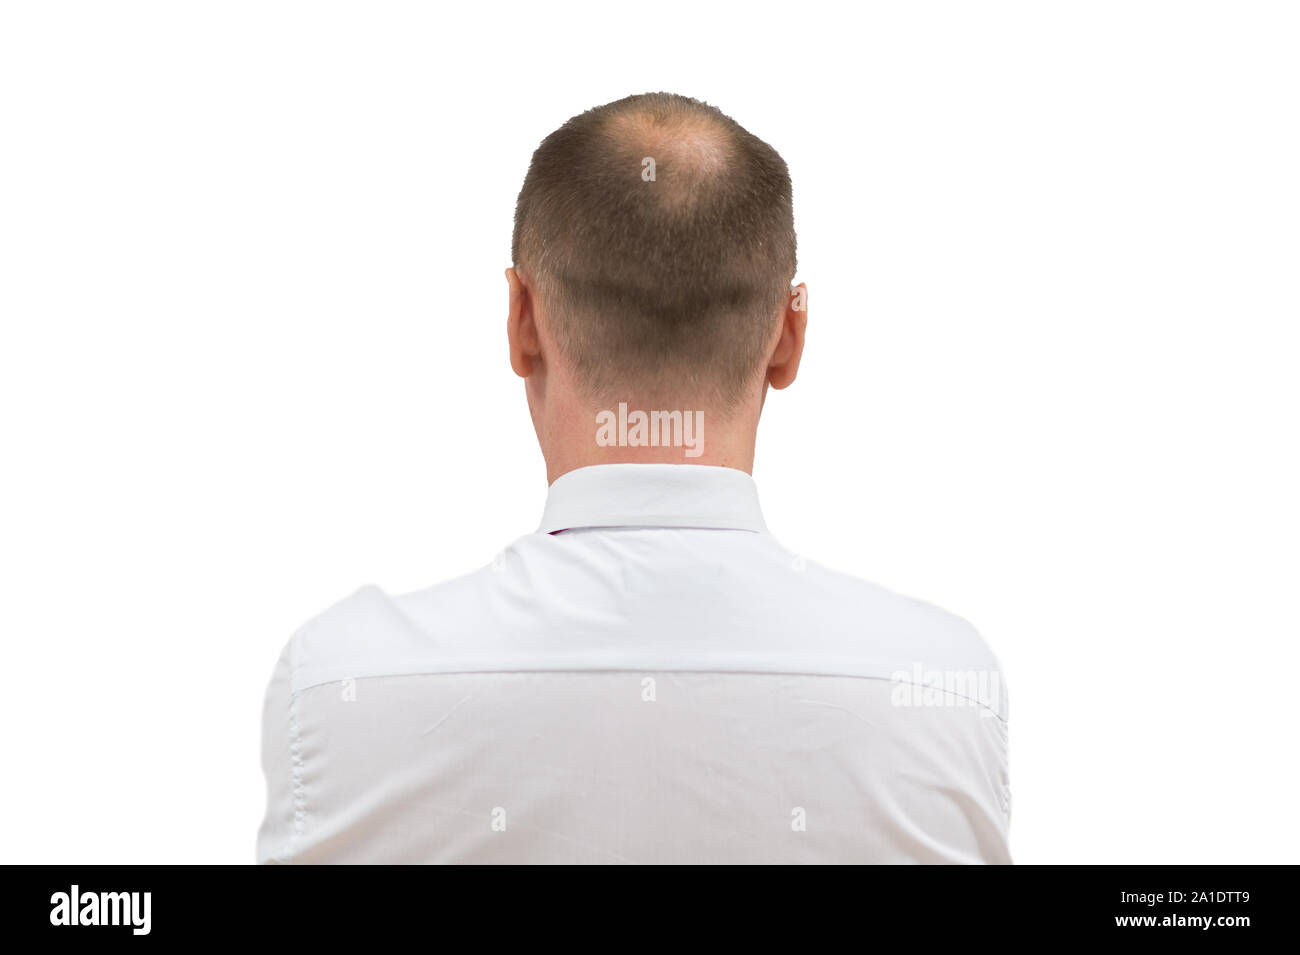 Alopecia umana o la perdita dei capelli - uomini adulti testa calva. torna di balding uomo dalle spalle isolati su sfondo bianco. Foto Stock